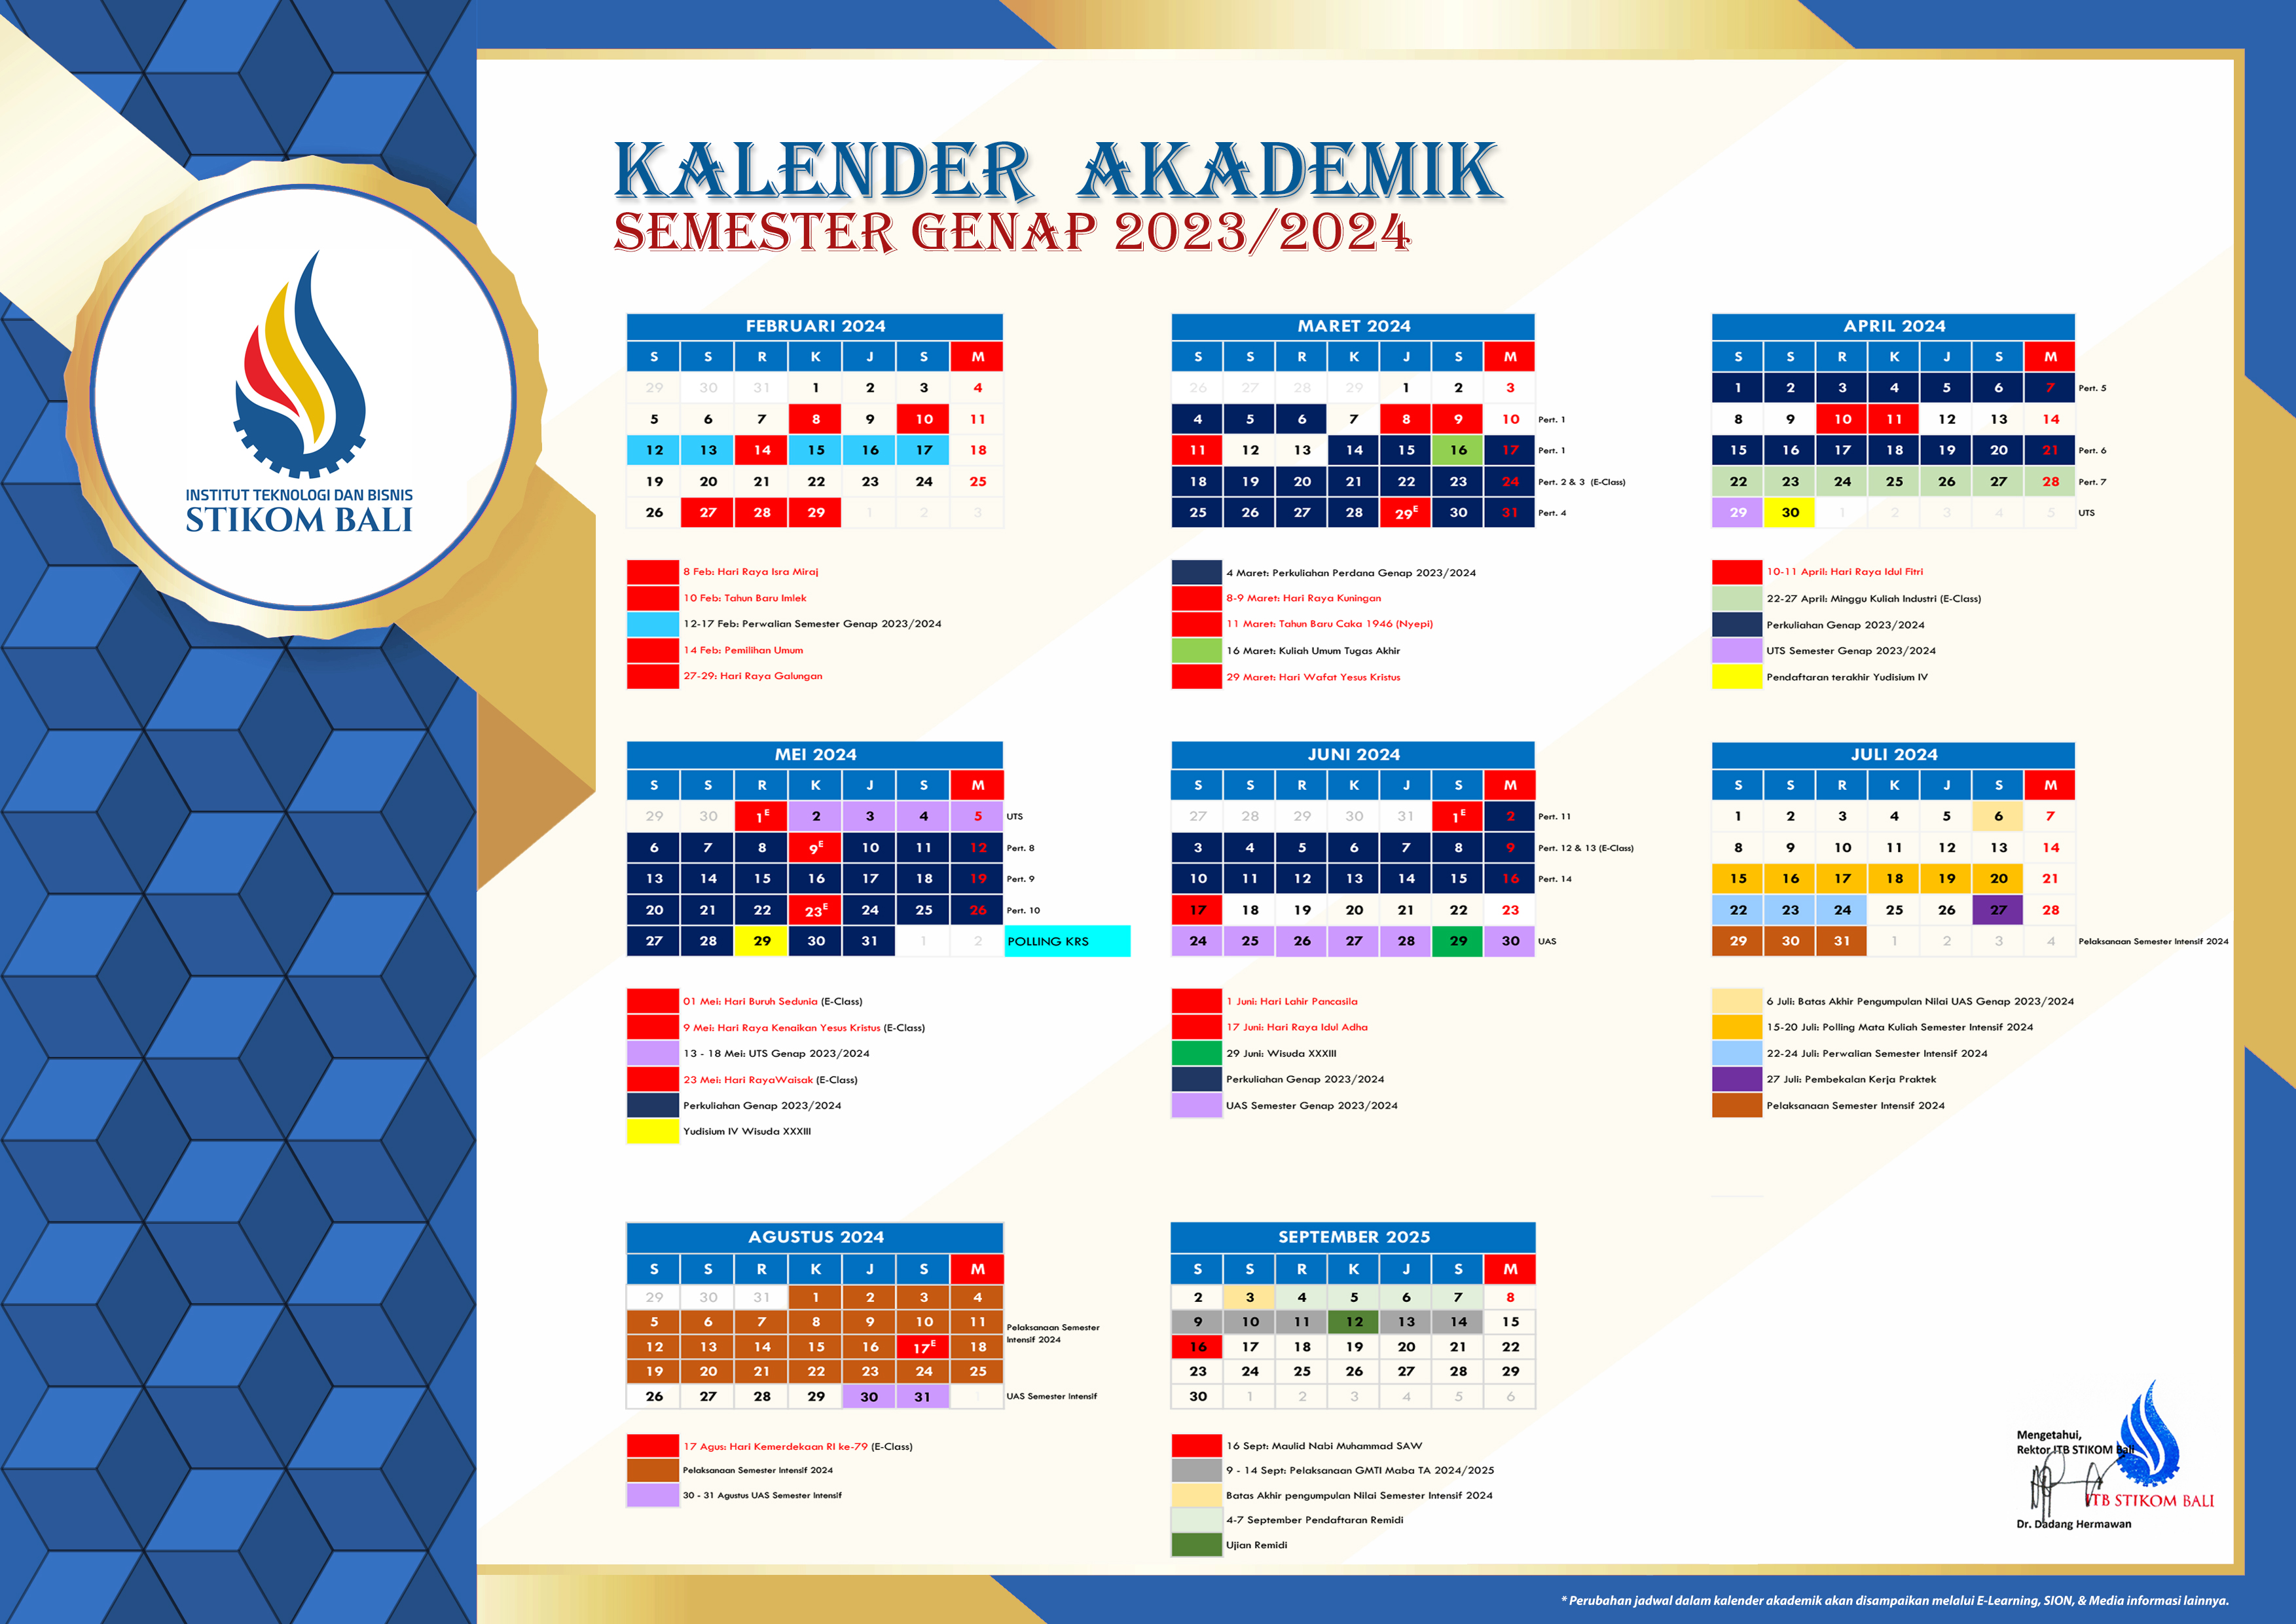 Lampiran Kalender Akademik Semester Genap 2023-2024.jpg